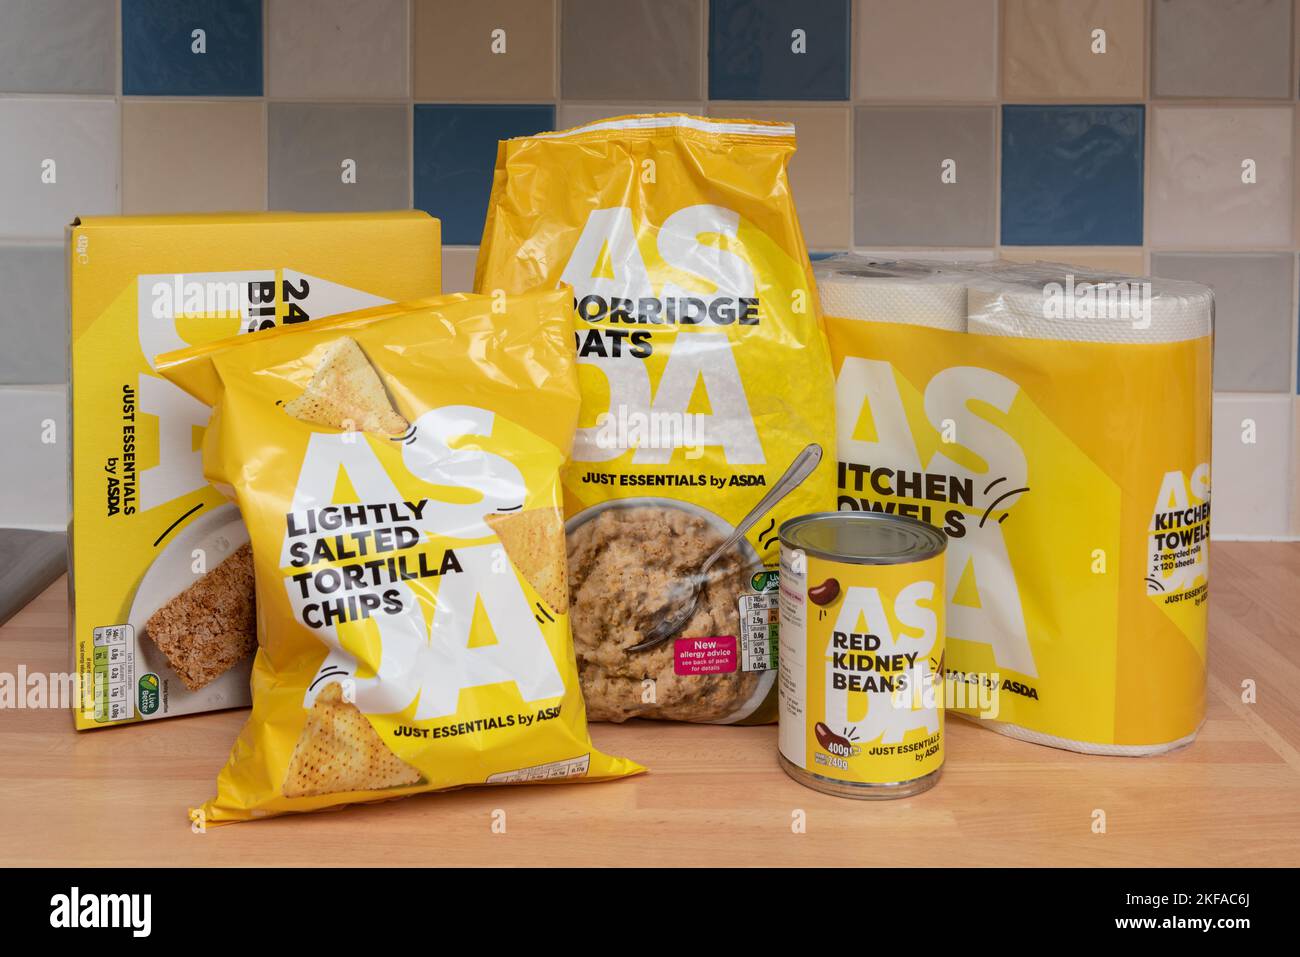 Foto degli alimenti della gamma Just Essentials by ASDA. Controverse confezioni gialle che suggeriscono la povertà alimentare. Crisi nel Regno Unito Foto Stock